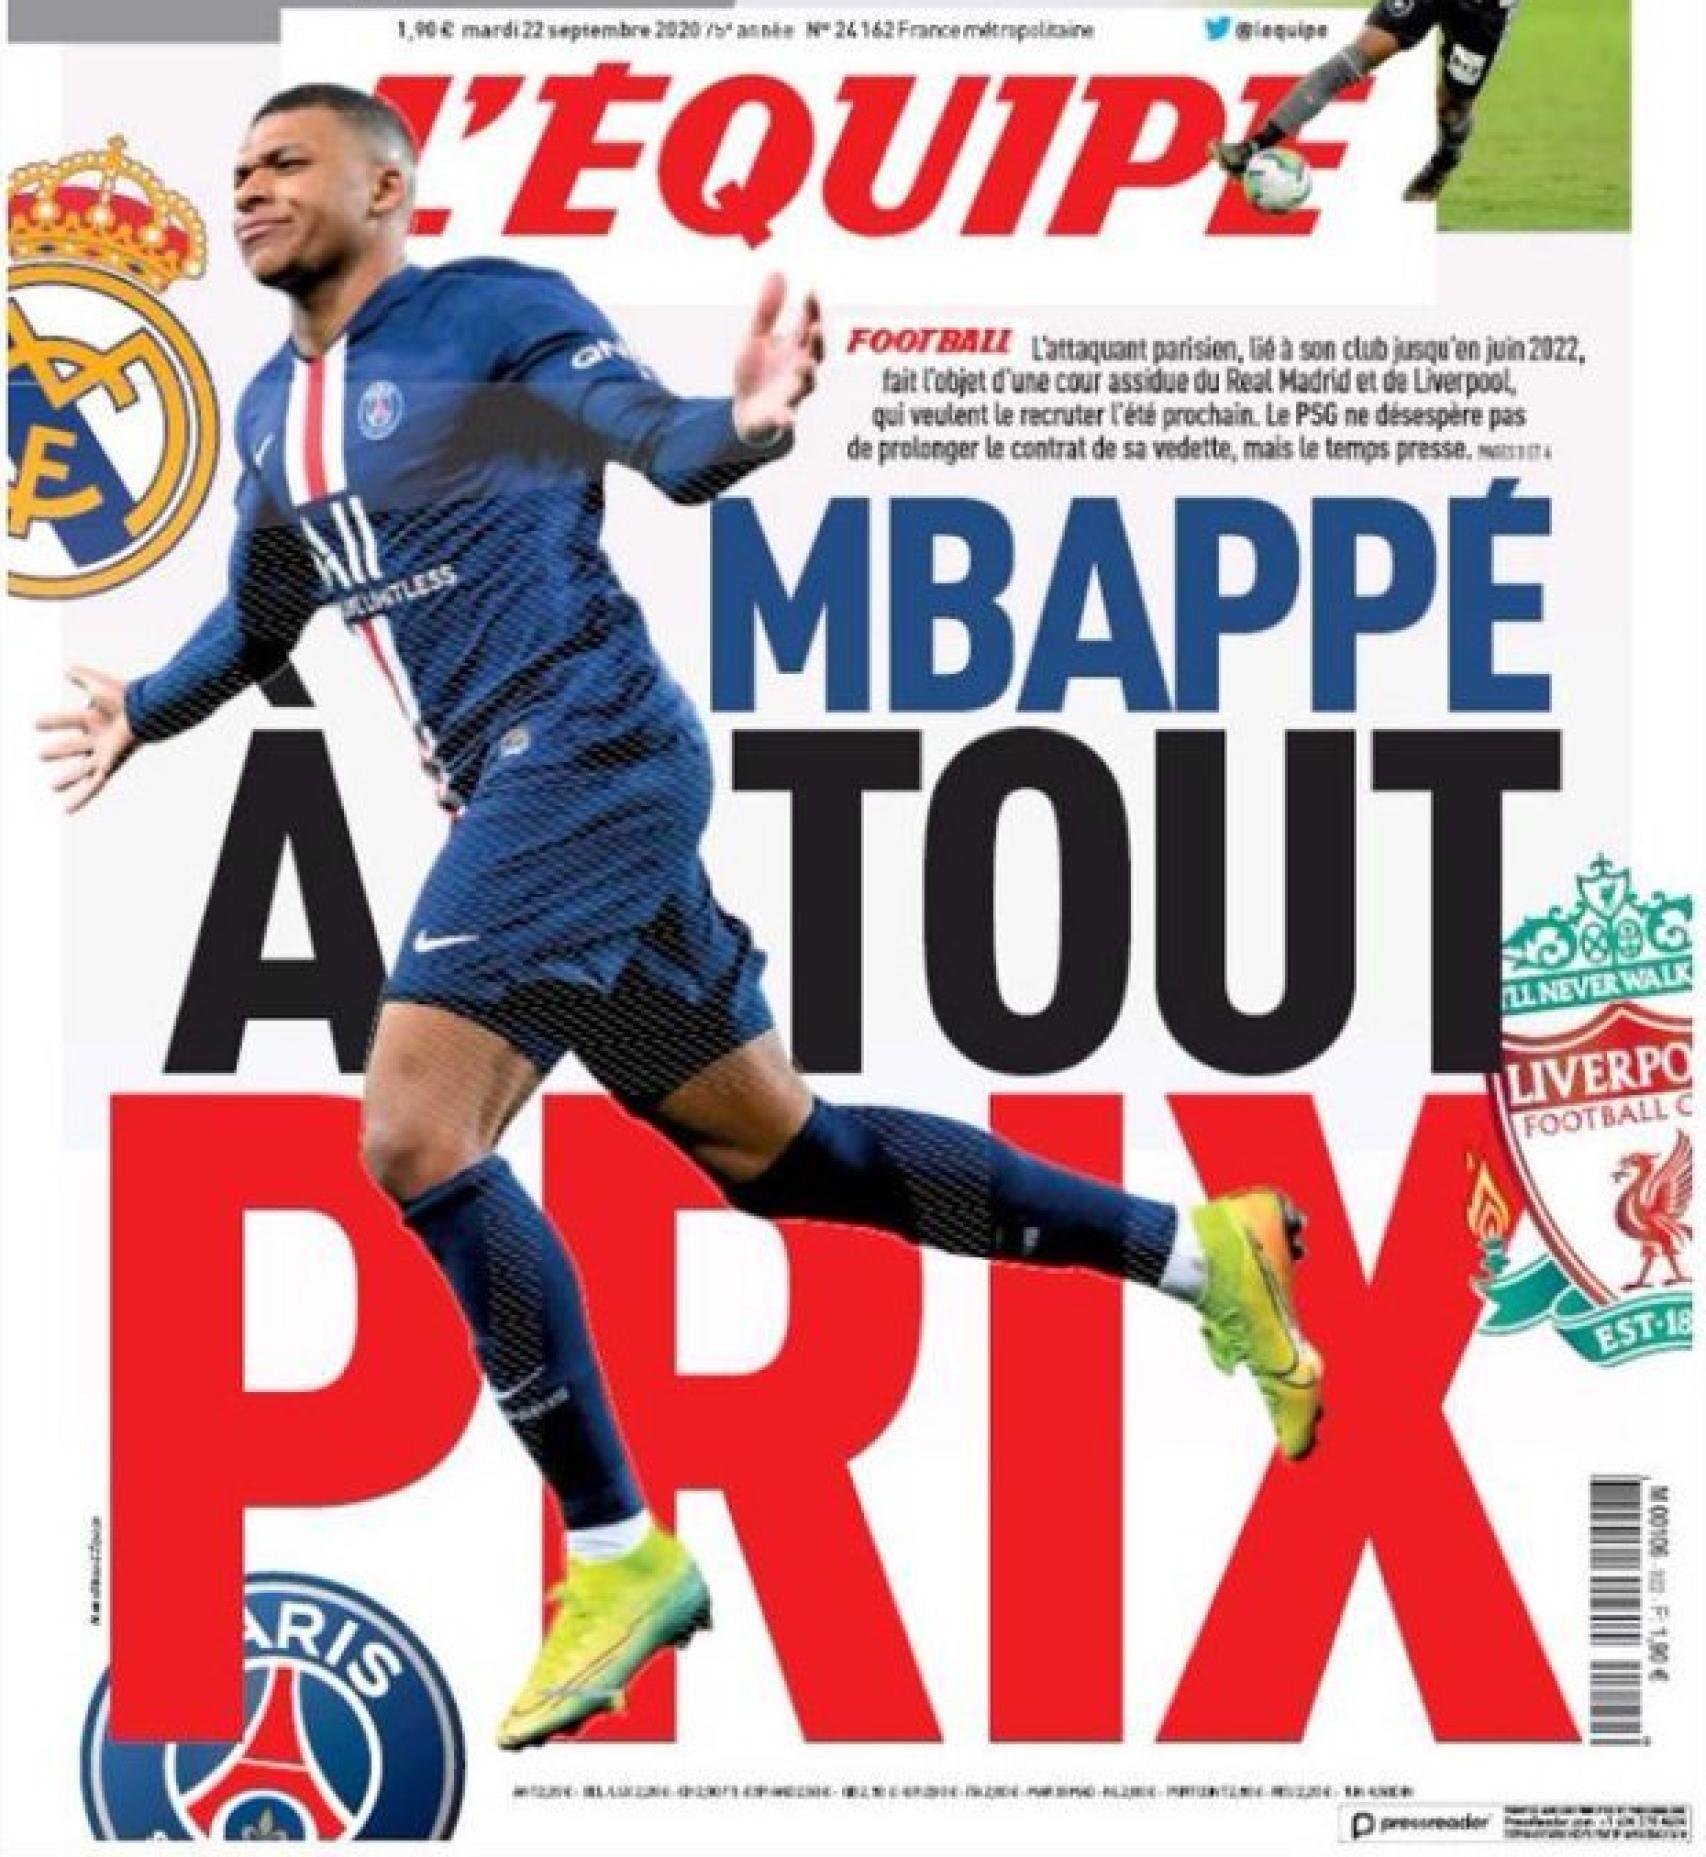 La portada del diario L'Équipe (22/09/2020)